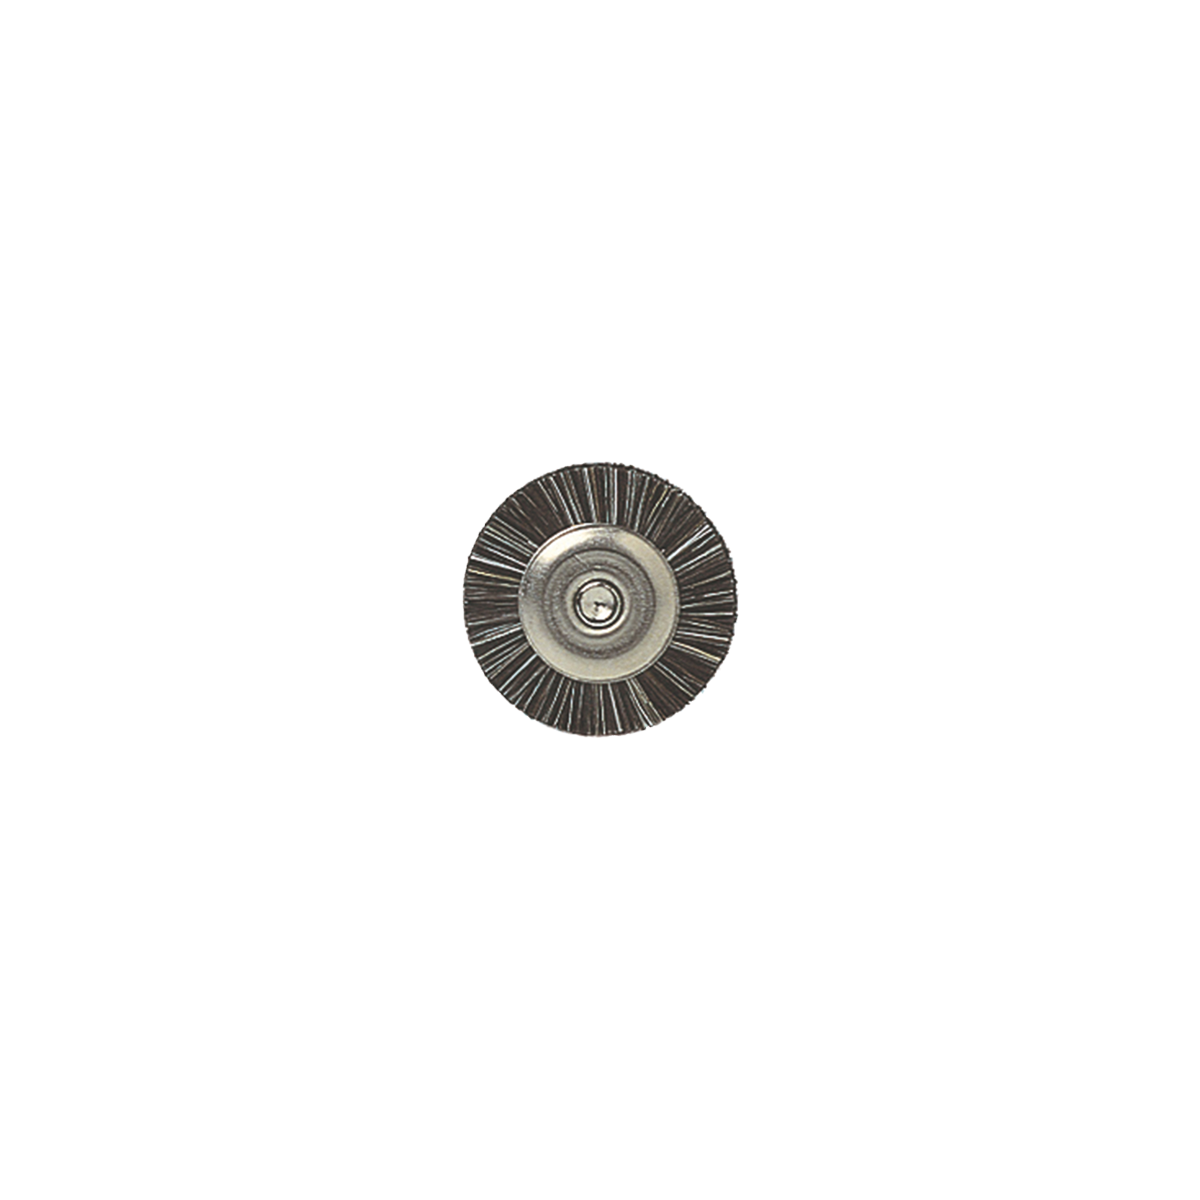 Bison-Polierbürsten mit Bisonhaar, 14 mm, 25 Stück